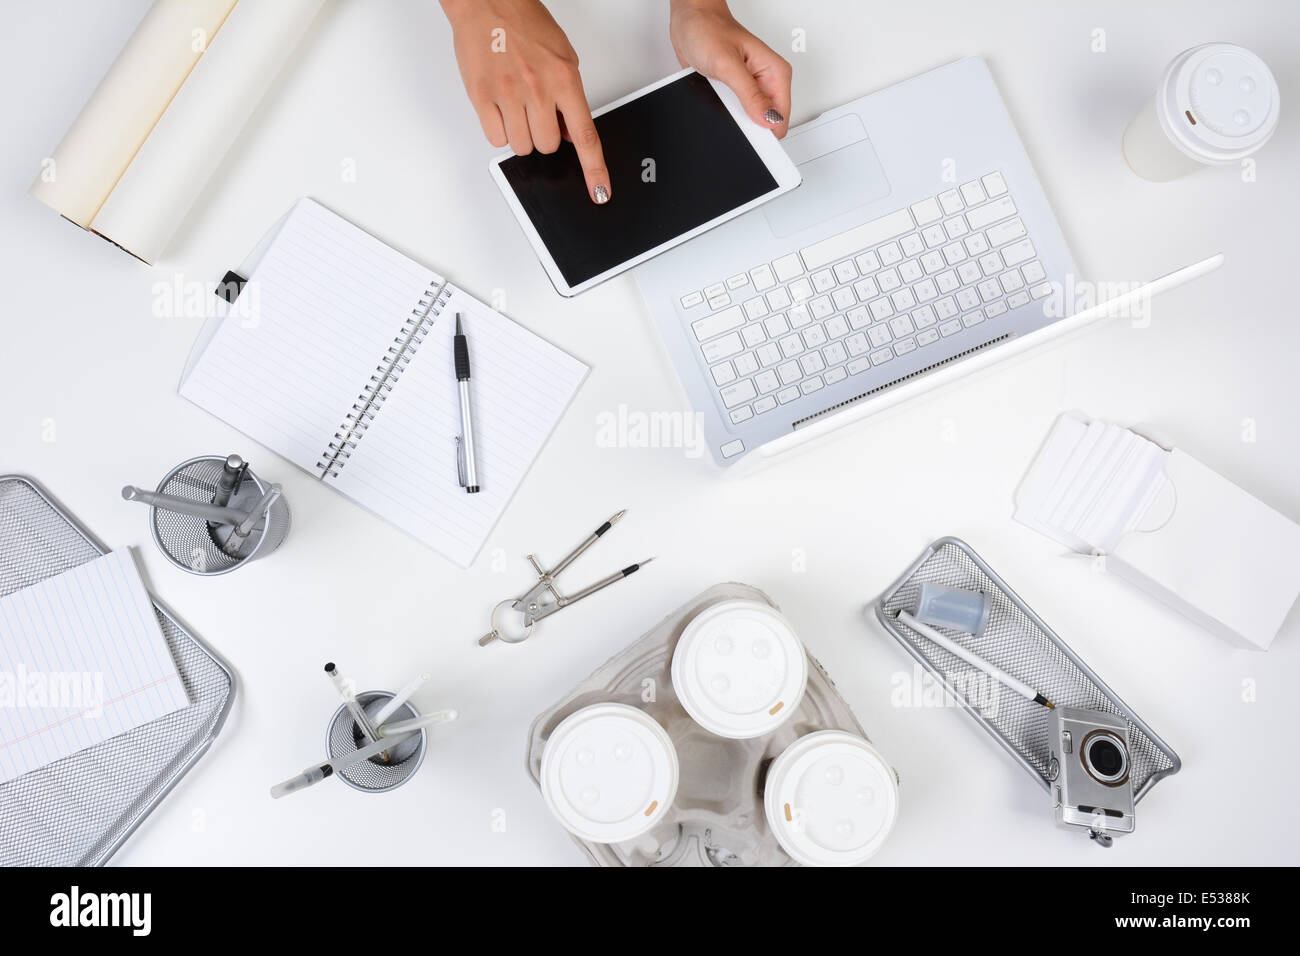 Hohen Winkel Schuss aus einem weißen Schreibtisch mit vorwiegend weißer und silberner Office-Objekte, mit einer Frau mit einem Tablet-computer Stockfoto